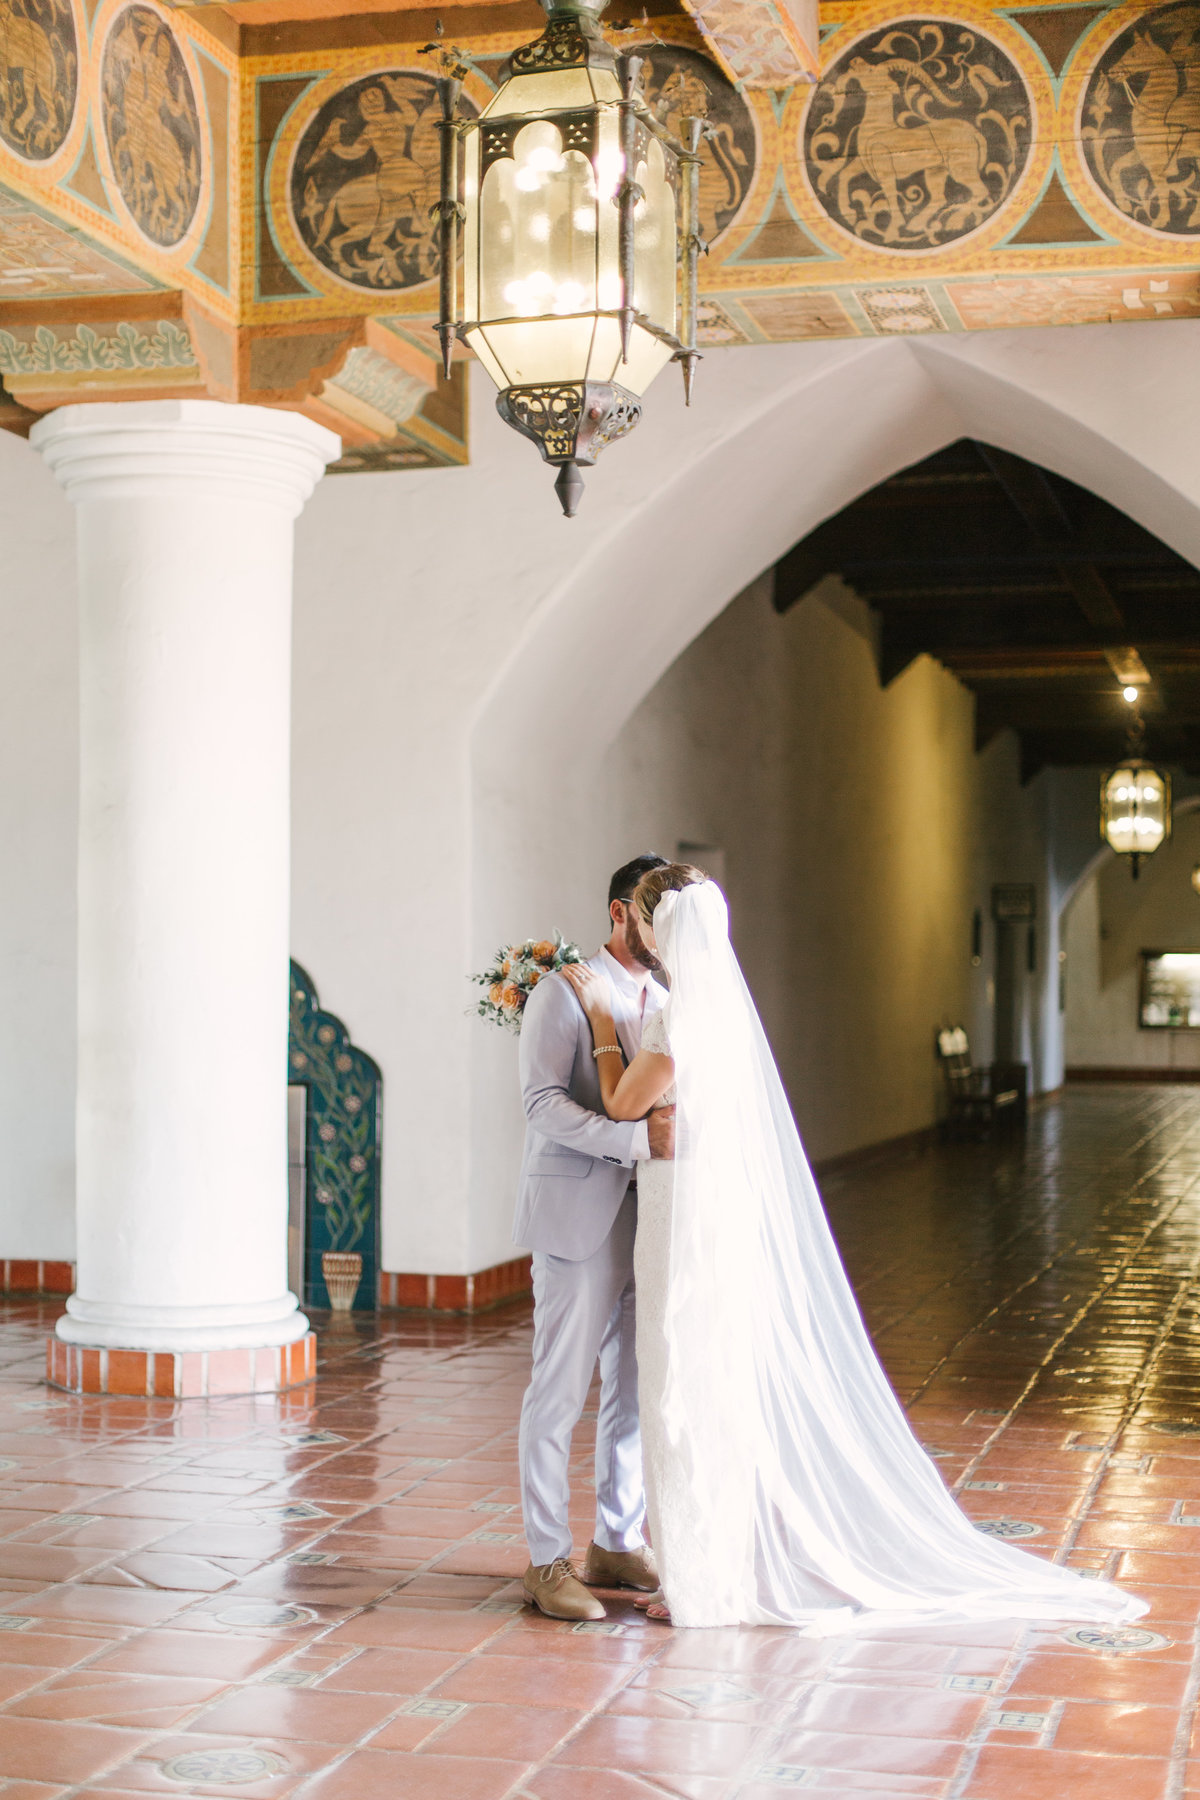 Groom kisses bride at Santa Barbara Courthouse wedding